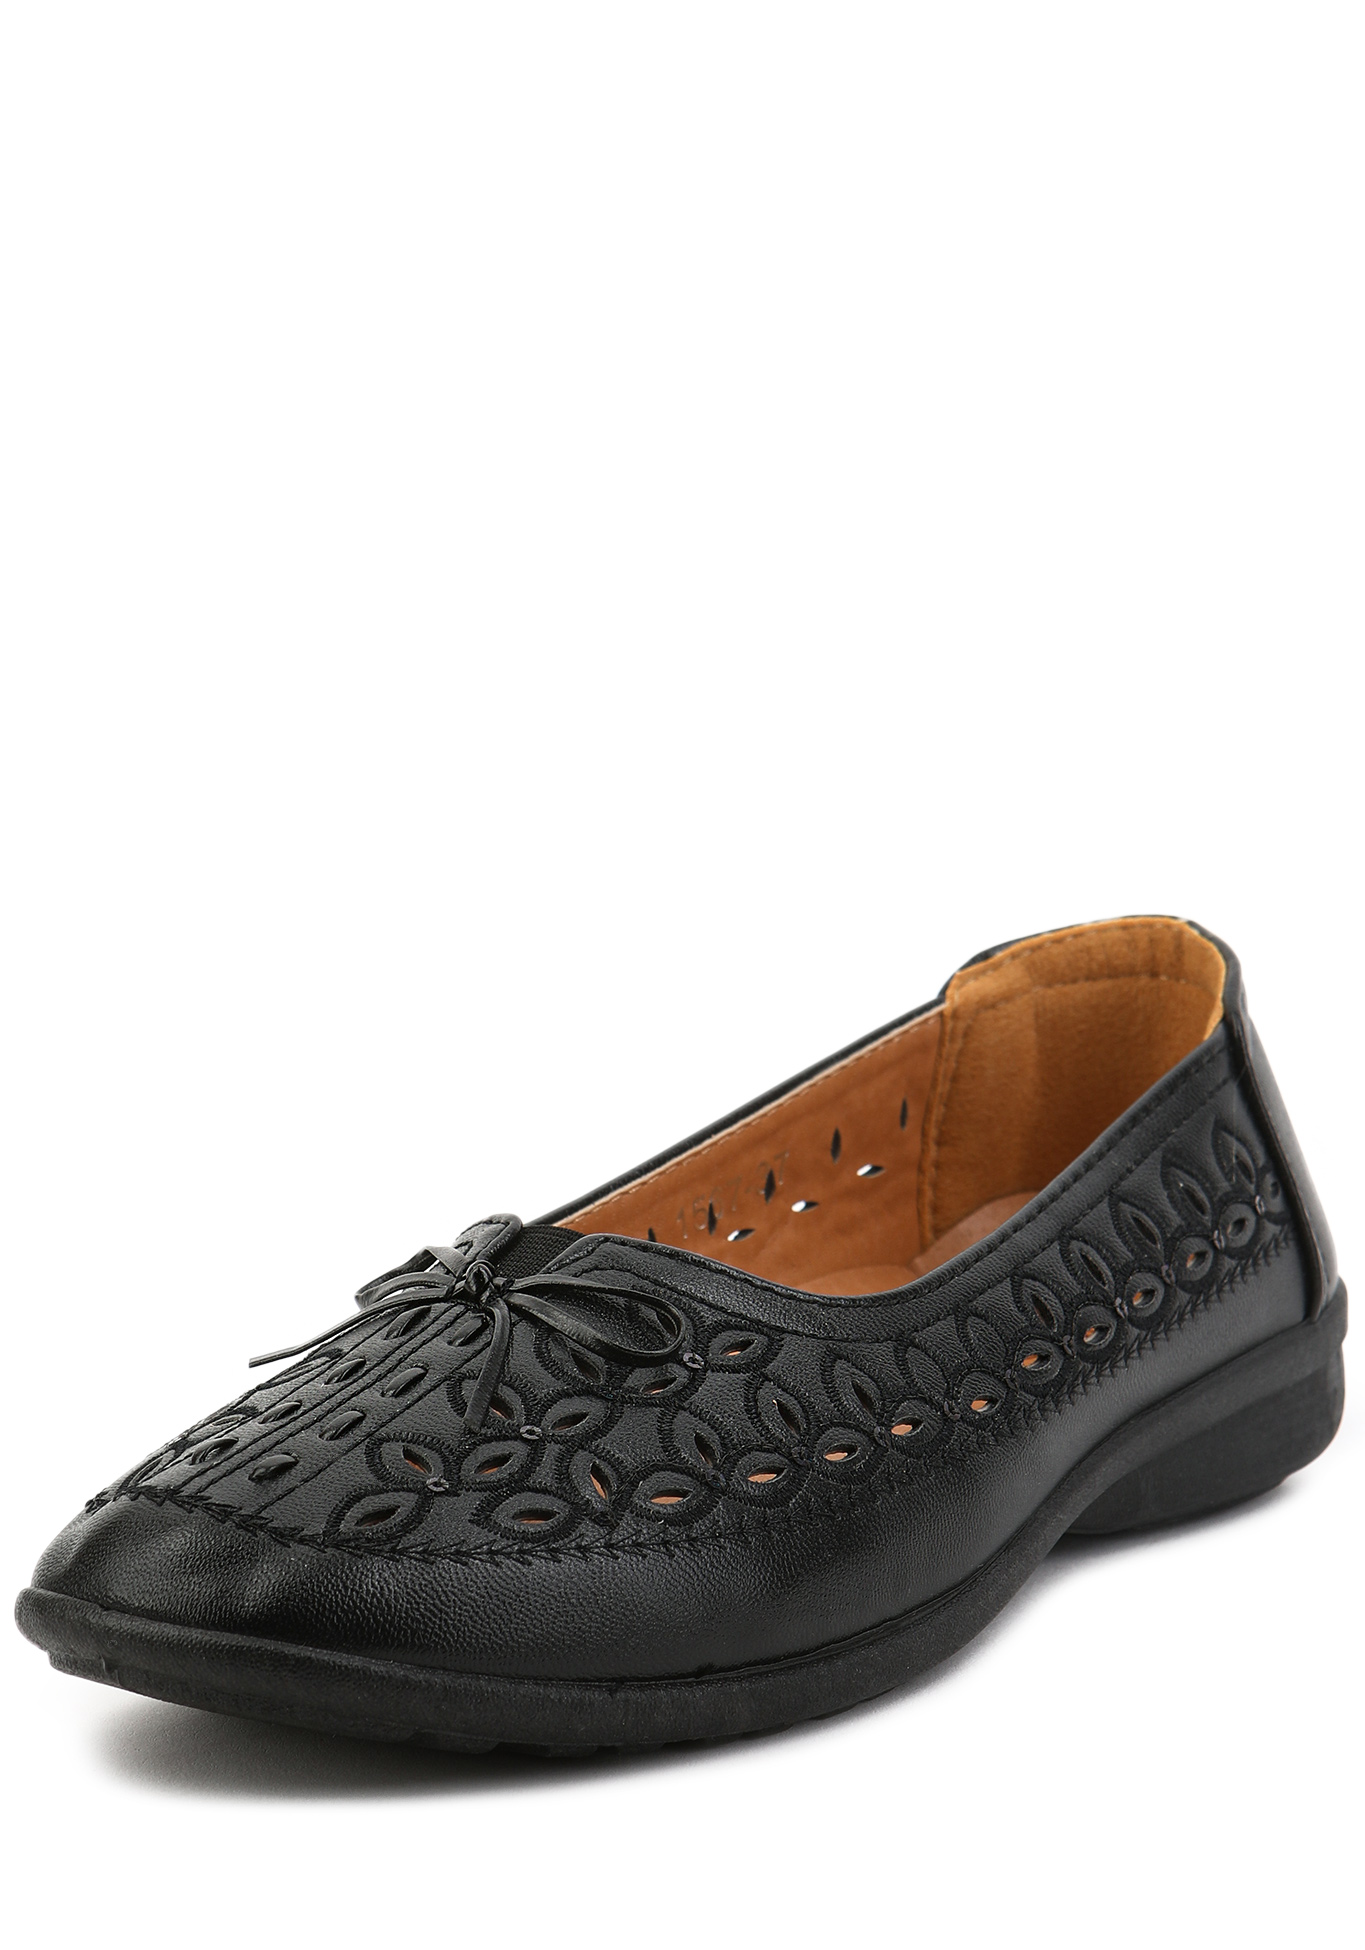 Туфли женские летние "Аннабель" AOWEI, размер 36, цвет черный - фото 1